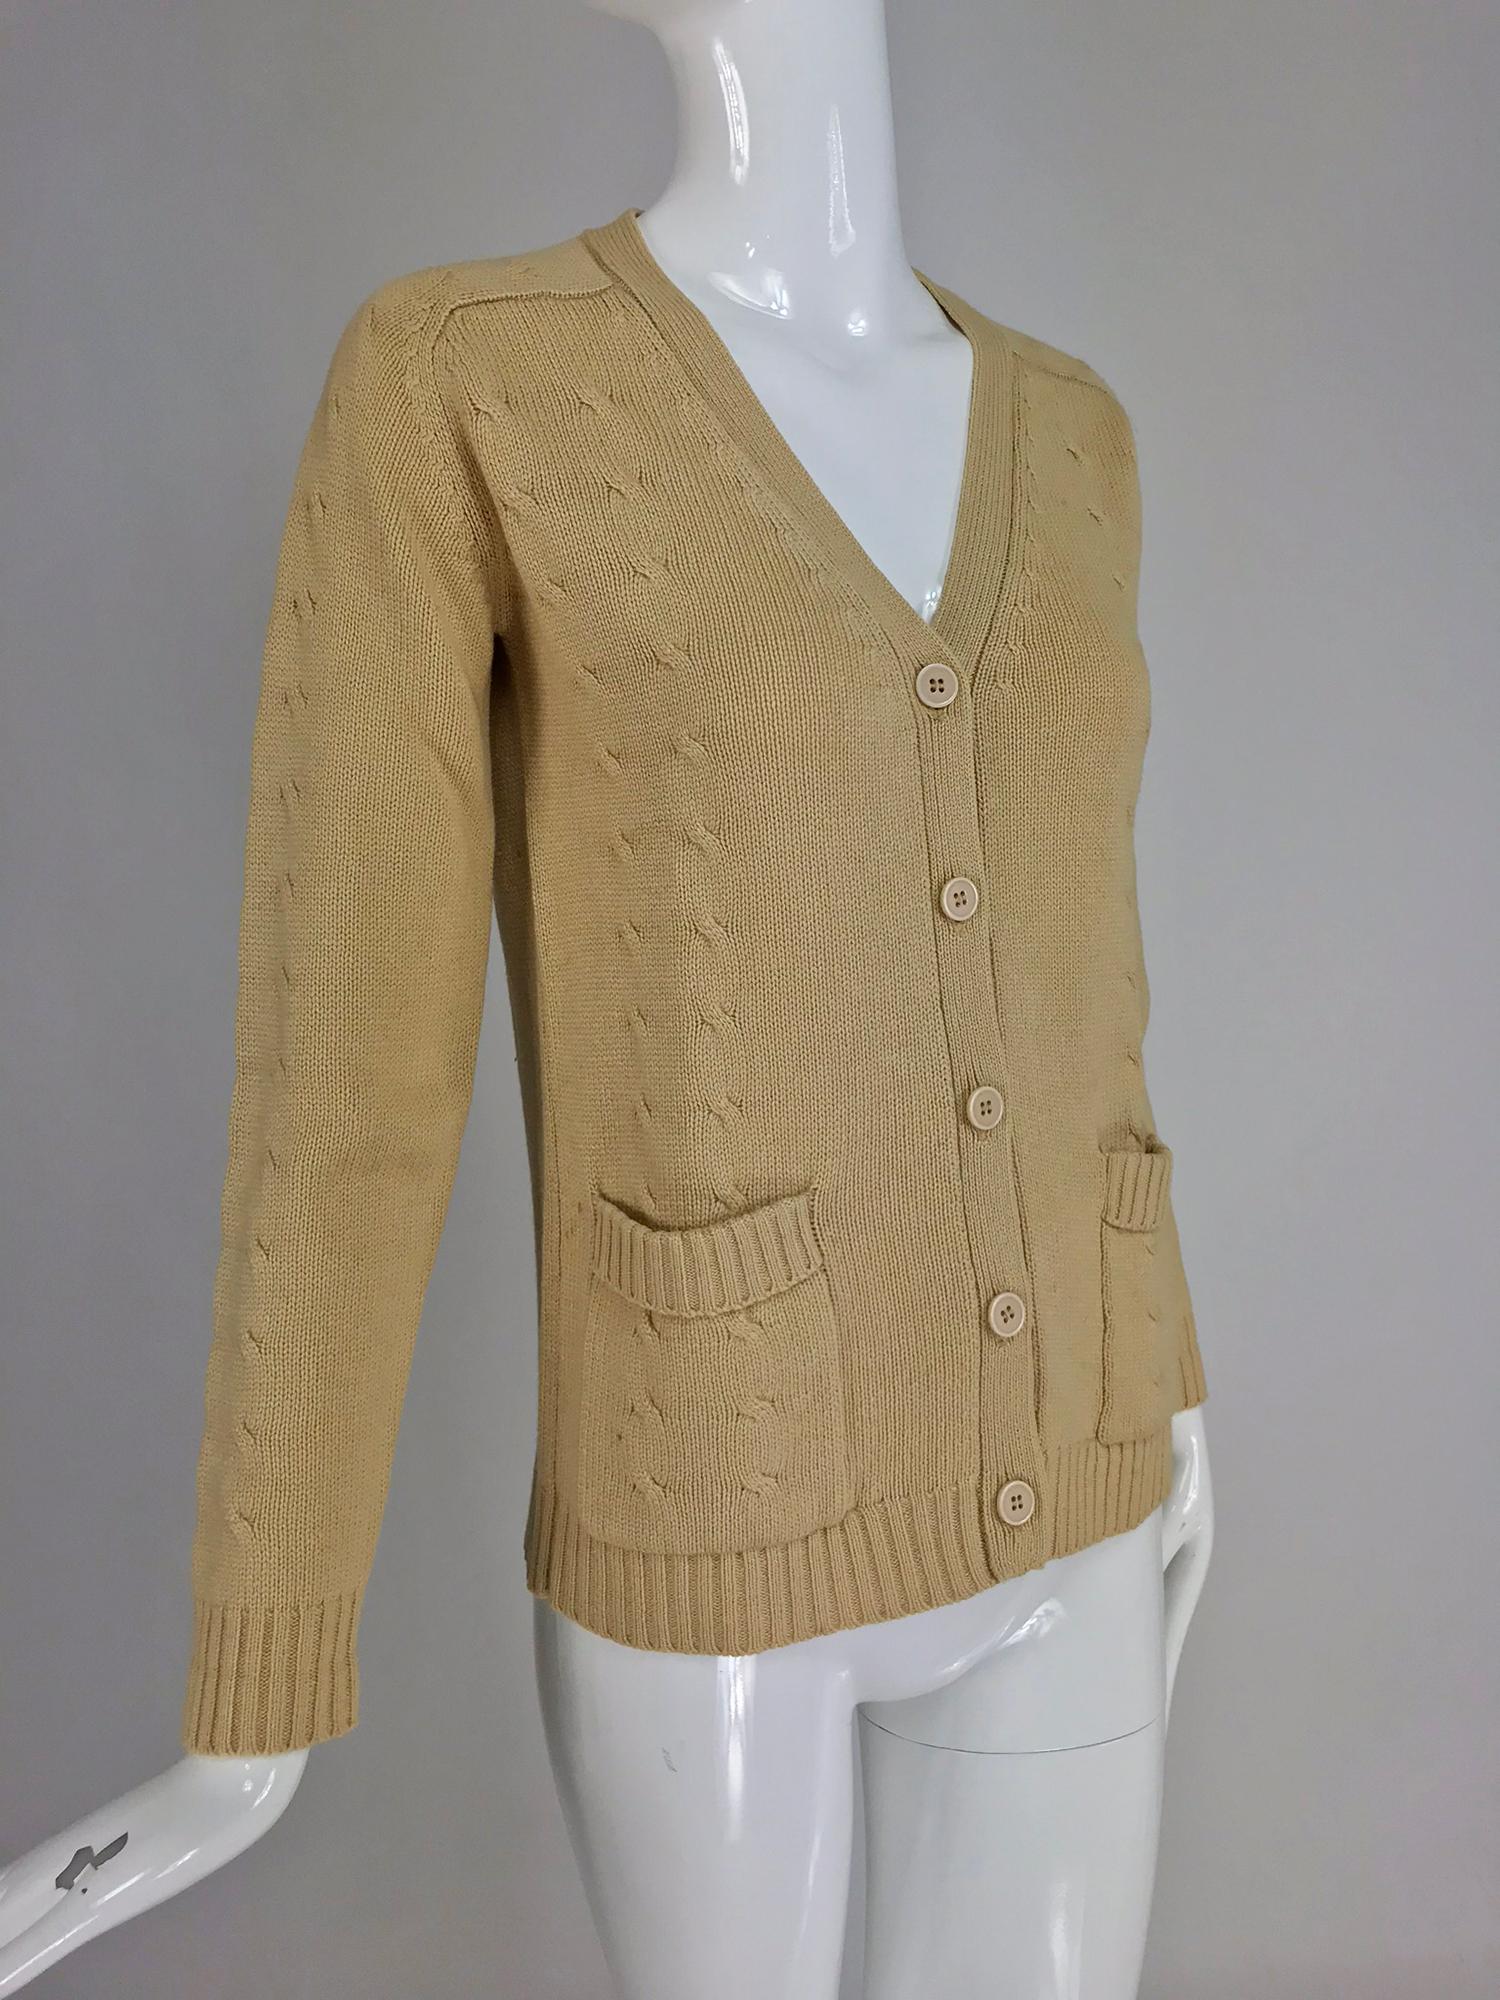 Hermes hellbrauner Kaschmir-Seidenpullover mit Zopfmuster aus den 1960er Jahren. Pullover im Boyfriend-Stil mit Knopfleiste, V-Ausschnitt und aufgesetzten Taschen auf der Vorderseite. Die Vorderseite und die äußeren Ärmel sind in einem Zopfmuster